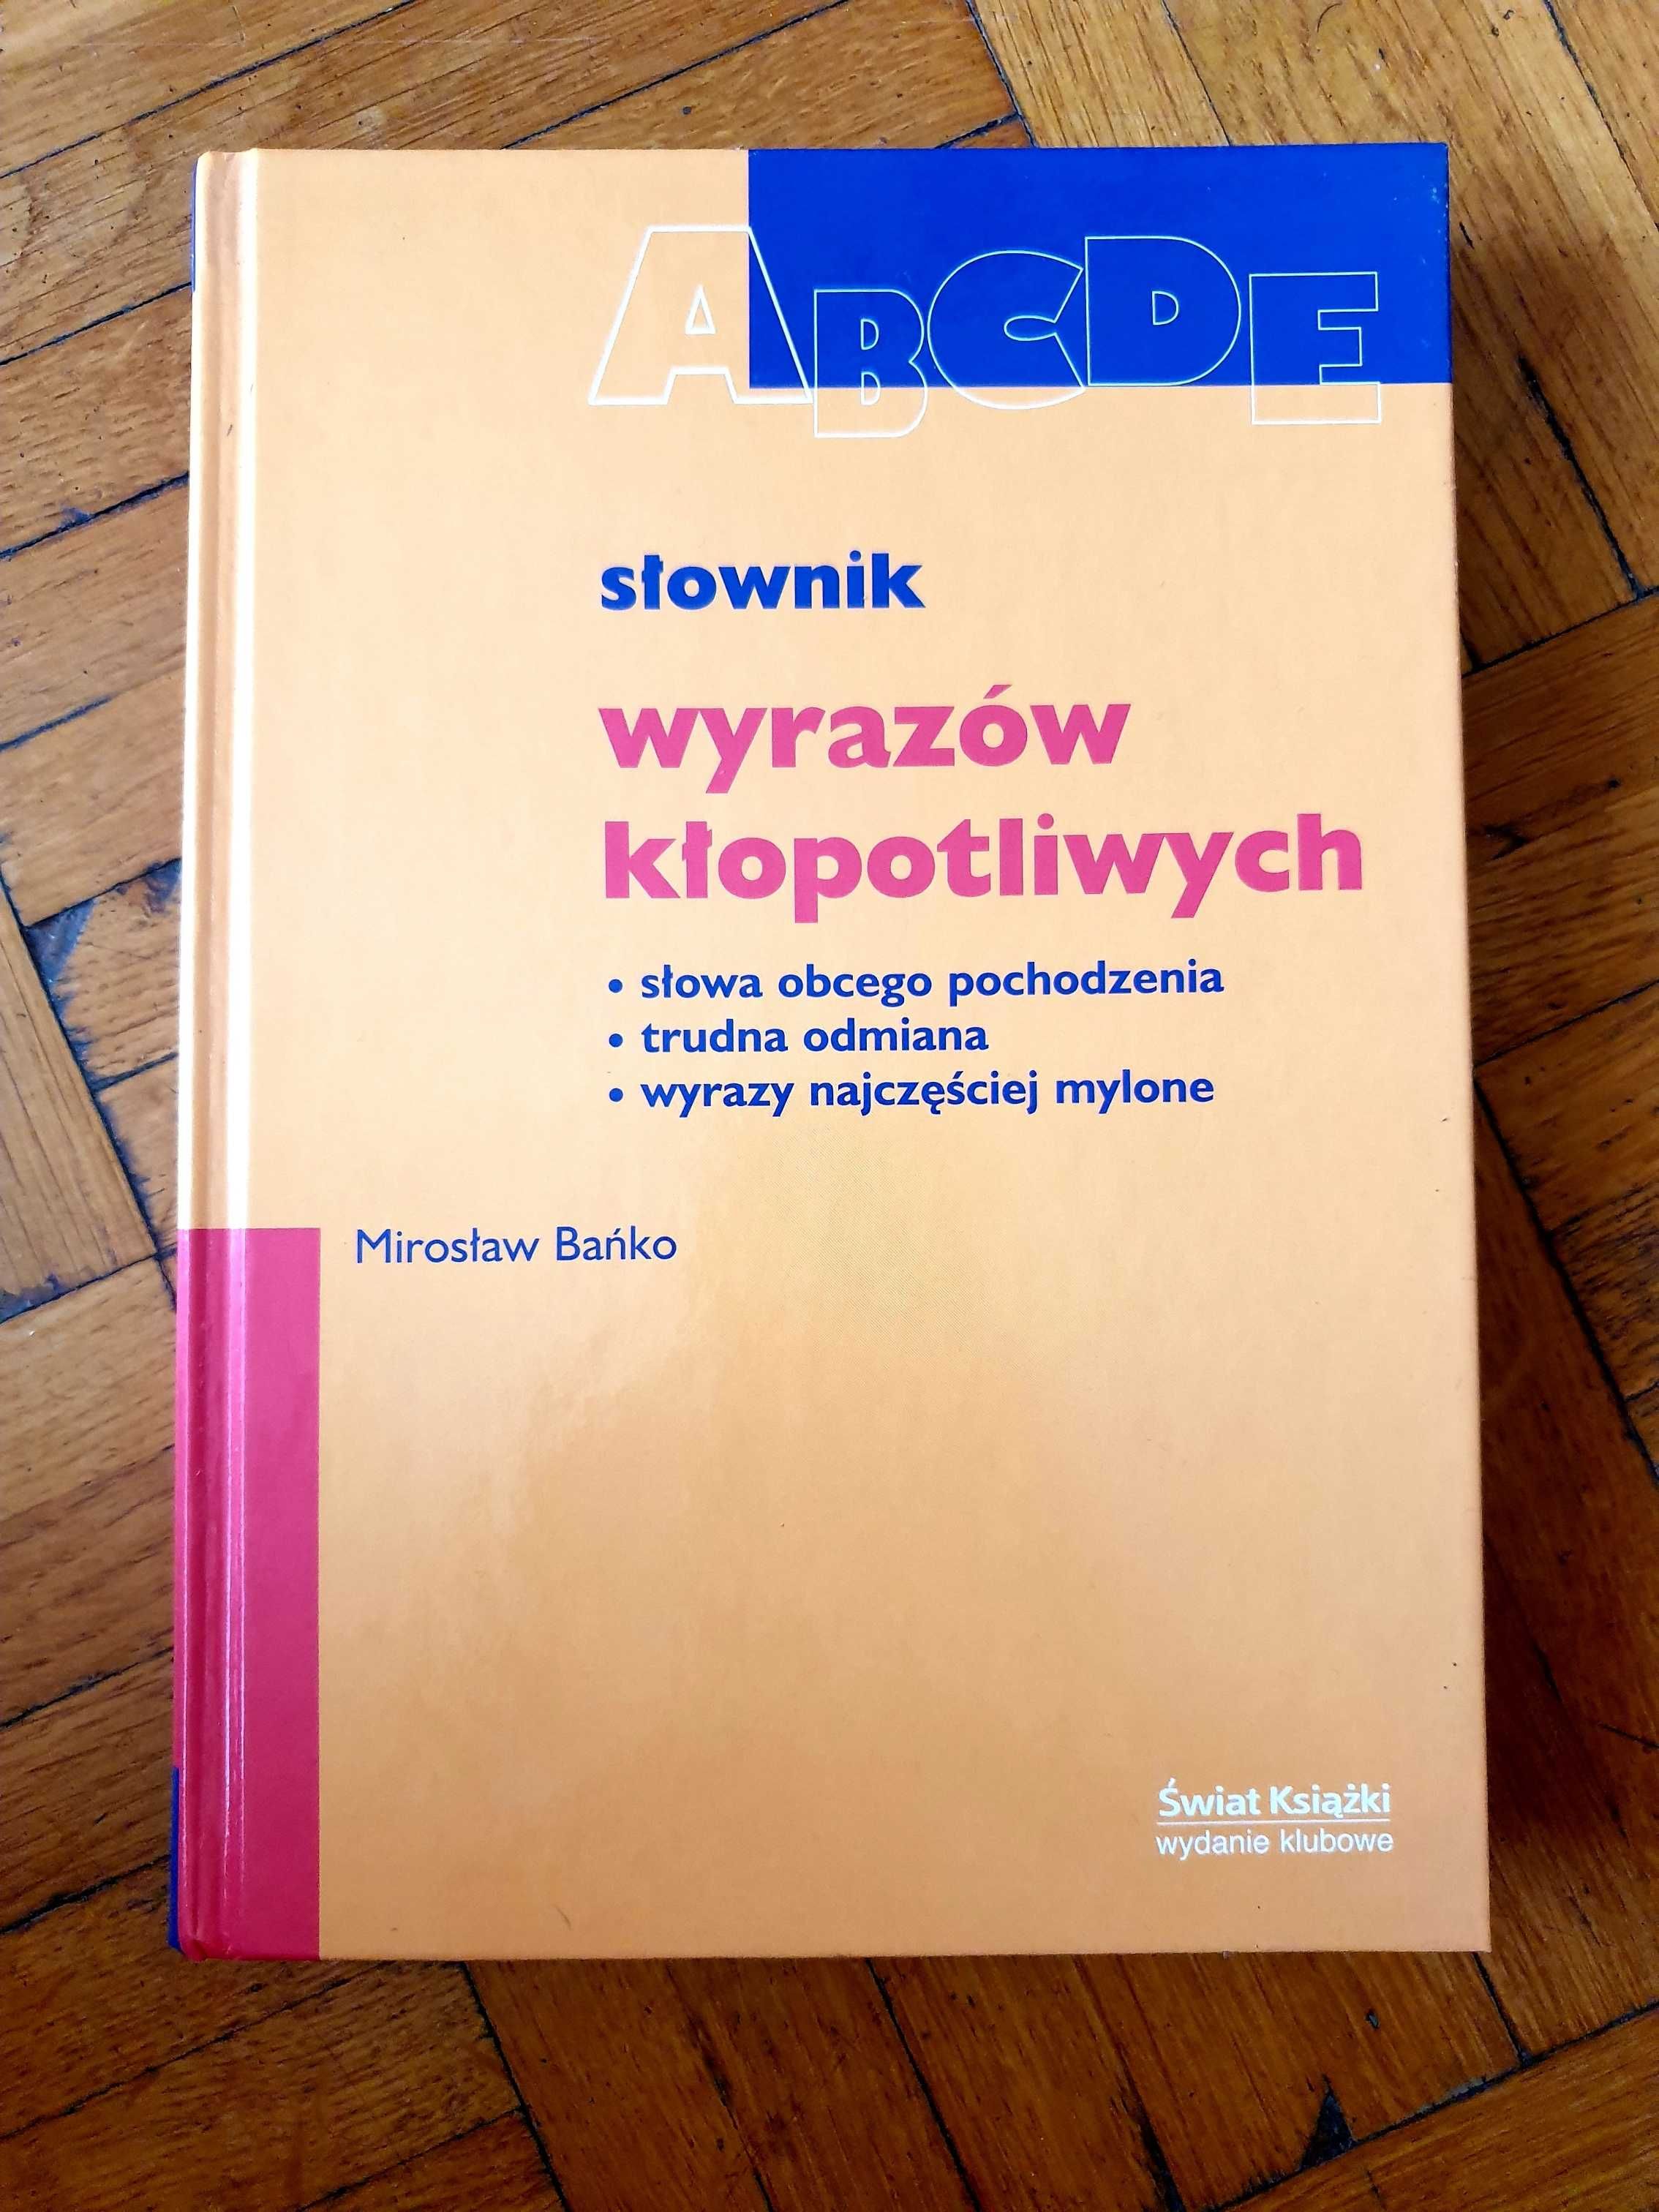 Słownik wyrazów kłopotliwych, Mirosław Bańko